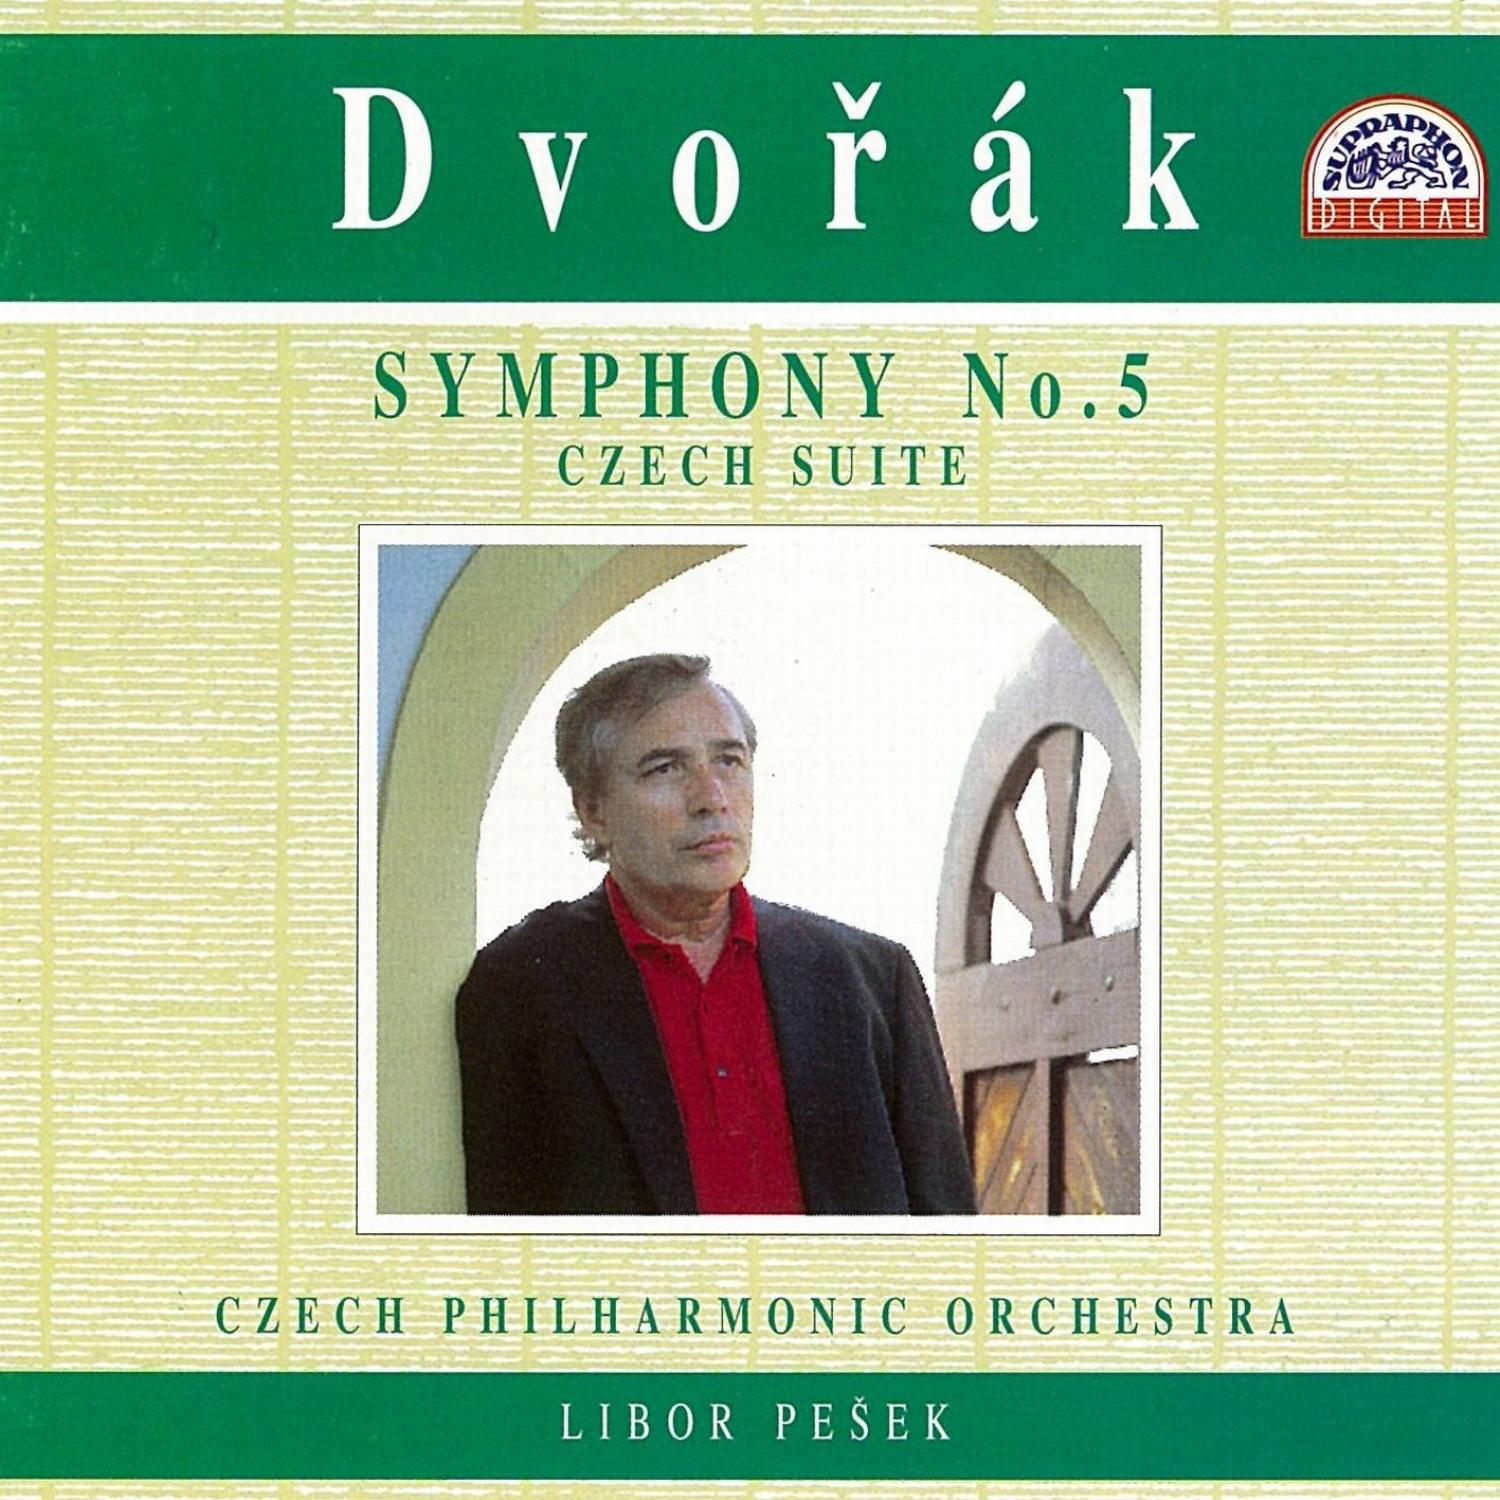 Czech Suite in D major, Op. 39: III. Sousedska. Allegro giusto